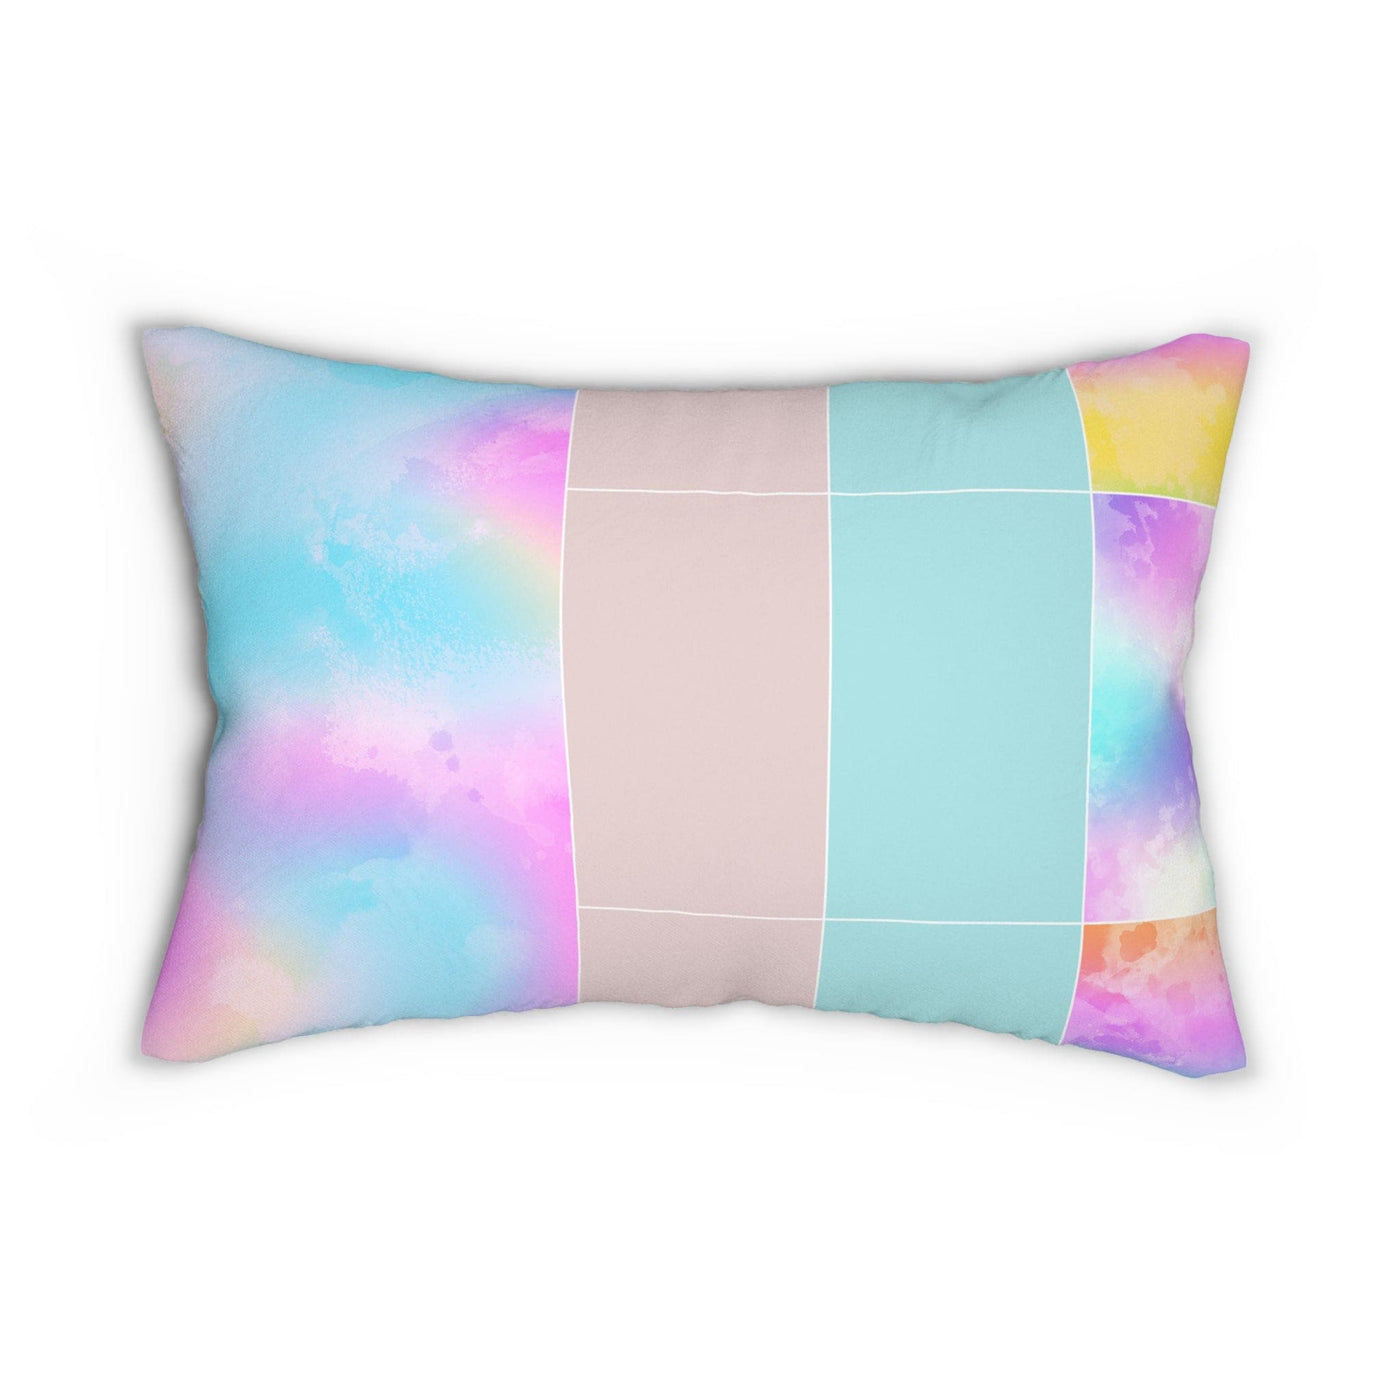 Decorative Lumbar Throw Pillow - Pastel Colorblock Watercolor Illustration